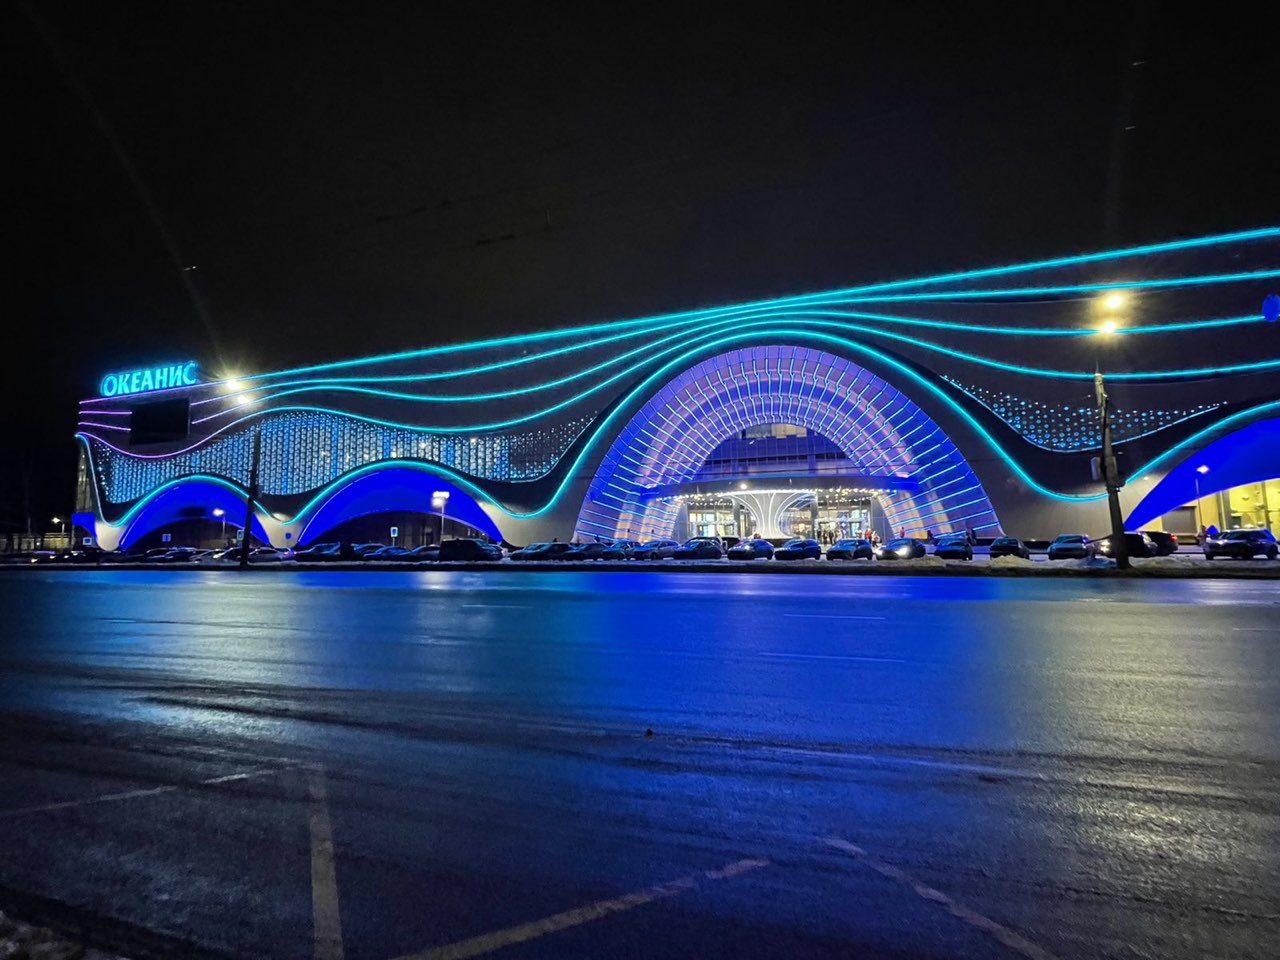 Нижегородский аквапарк «Океанис» претендует на налоговые льготы в размере 420 млн рублей - фото 1